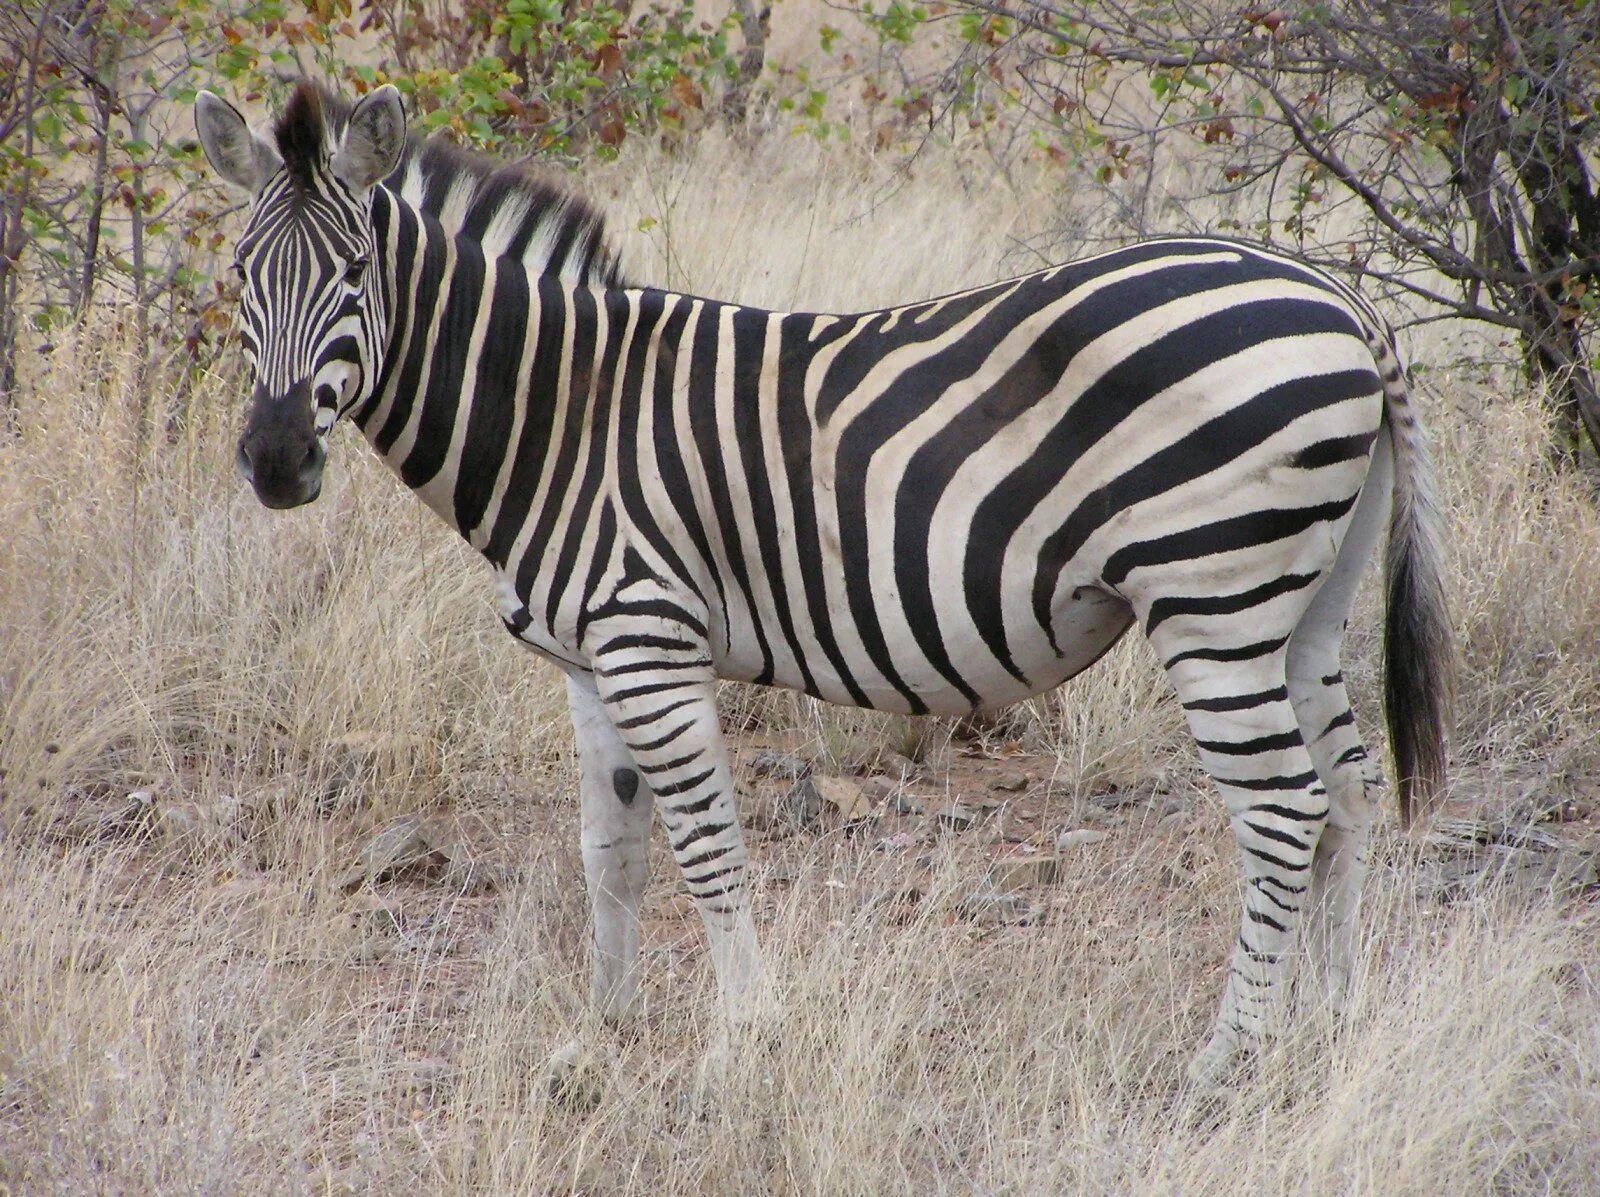 Пустынная Зебра. Окрас зебры. Зебра белая в черную полоску или черная в белую полоску. Расчленяющая окраска животных. Зебра живет в африке